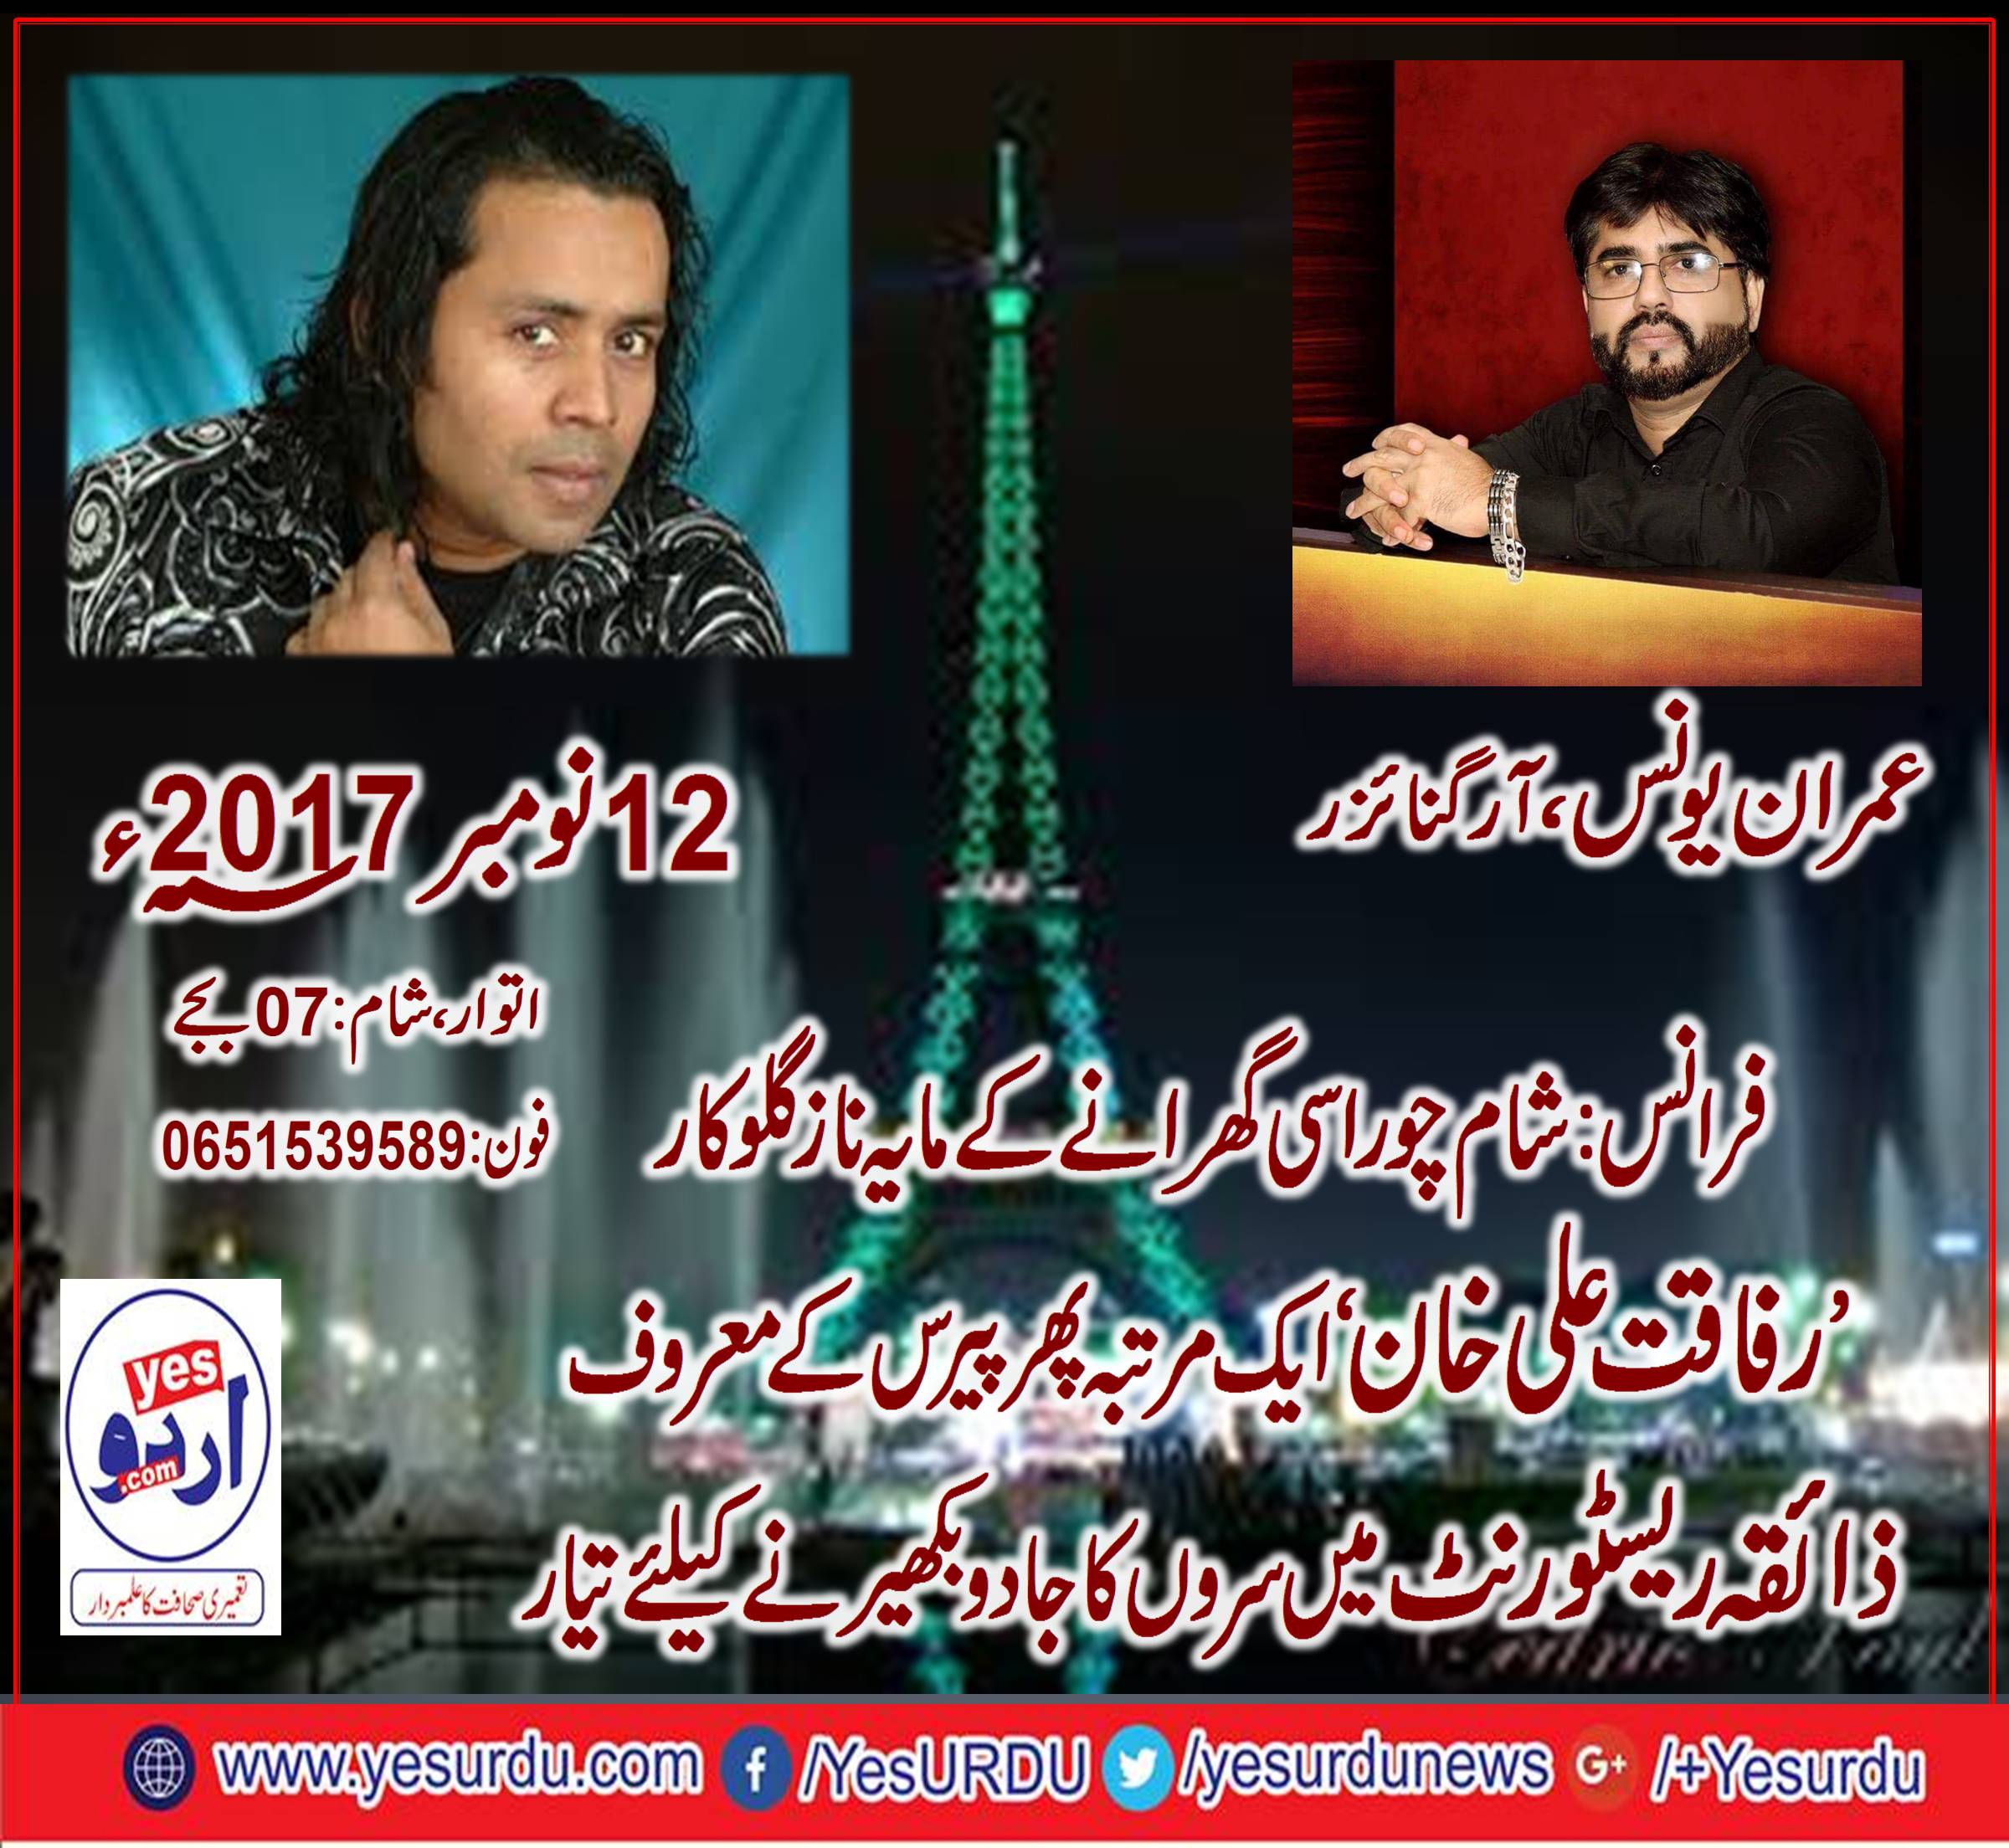 Paris, cultural, show, zaiqa, restaurant, opens, its, doors, for, Ustad Rafaqat Ali Khan